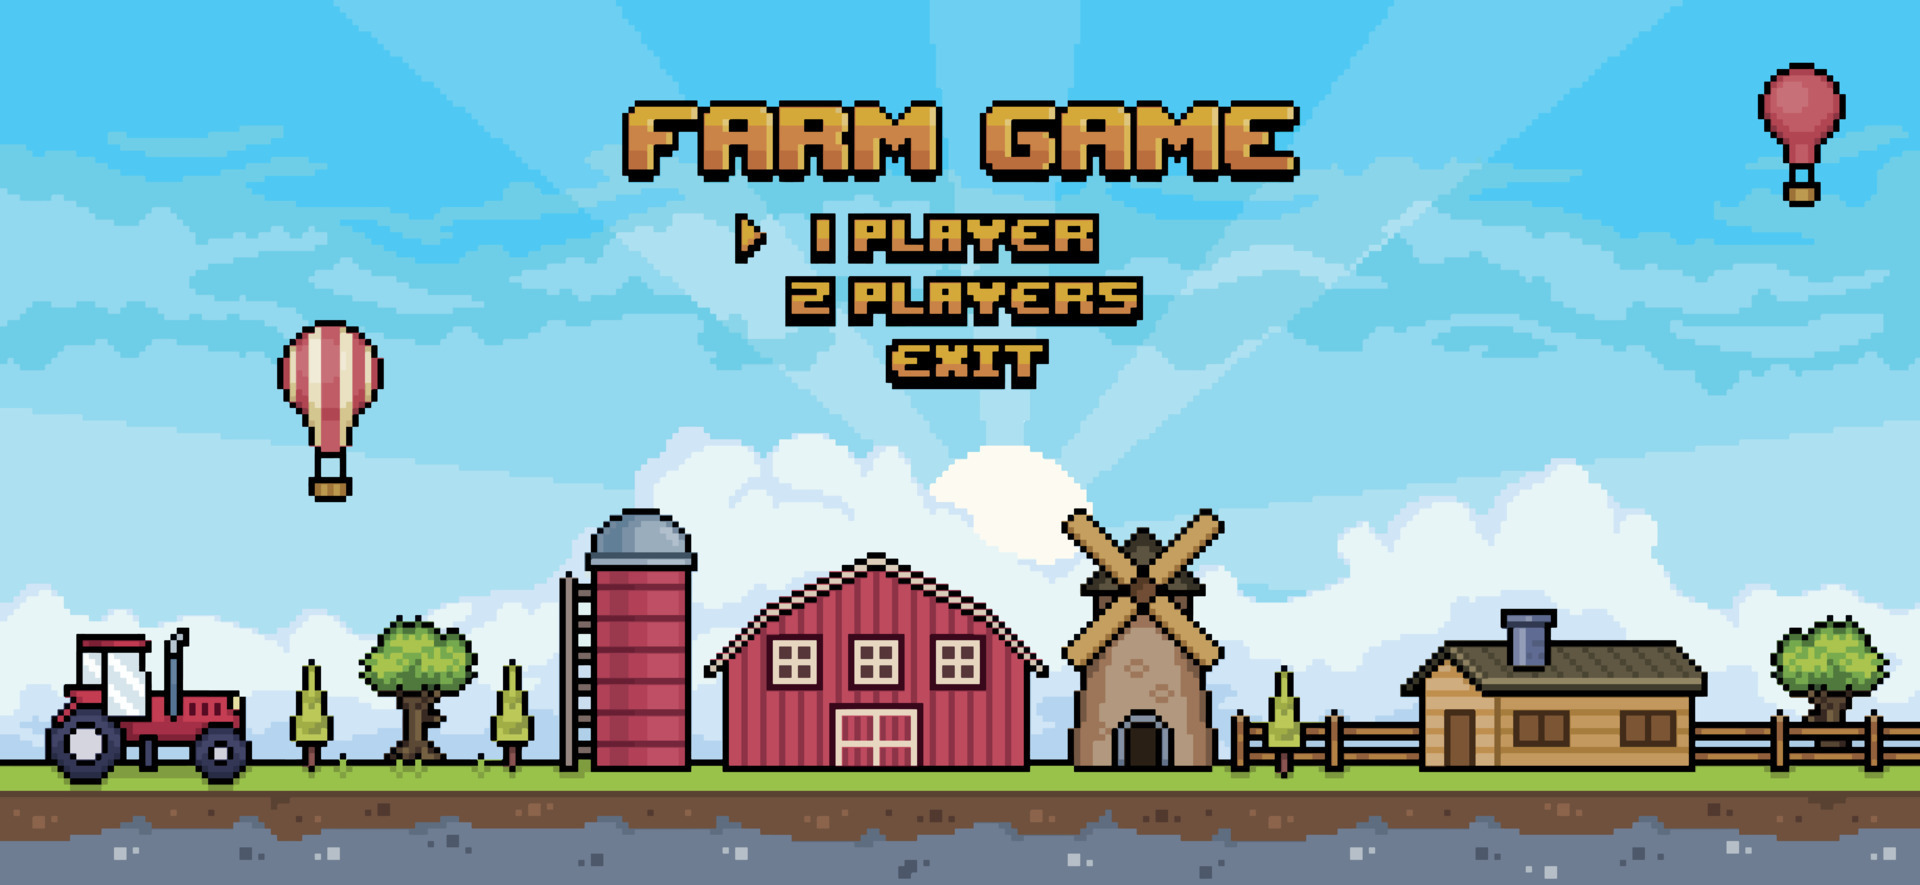 menu de jogo de fazenda de pixel art. paisagem da tela inicial do jogo de 8  bits com trator, casa, celeiro, moinho, silo, árvore, fundo de cerca  11484046 Vetor no Vecteezy